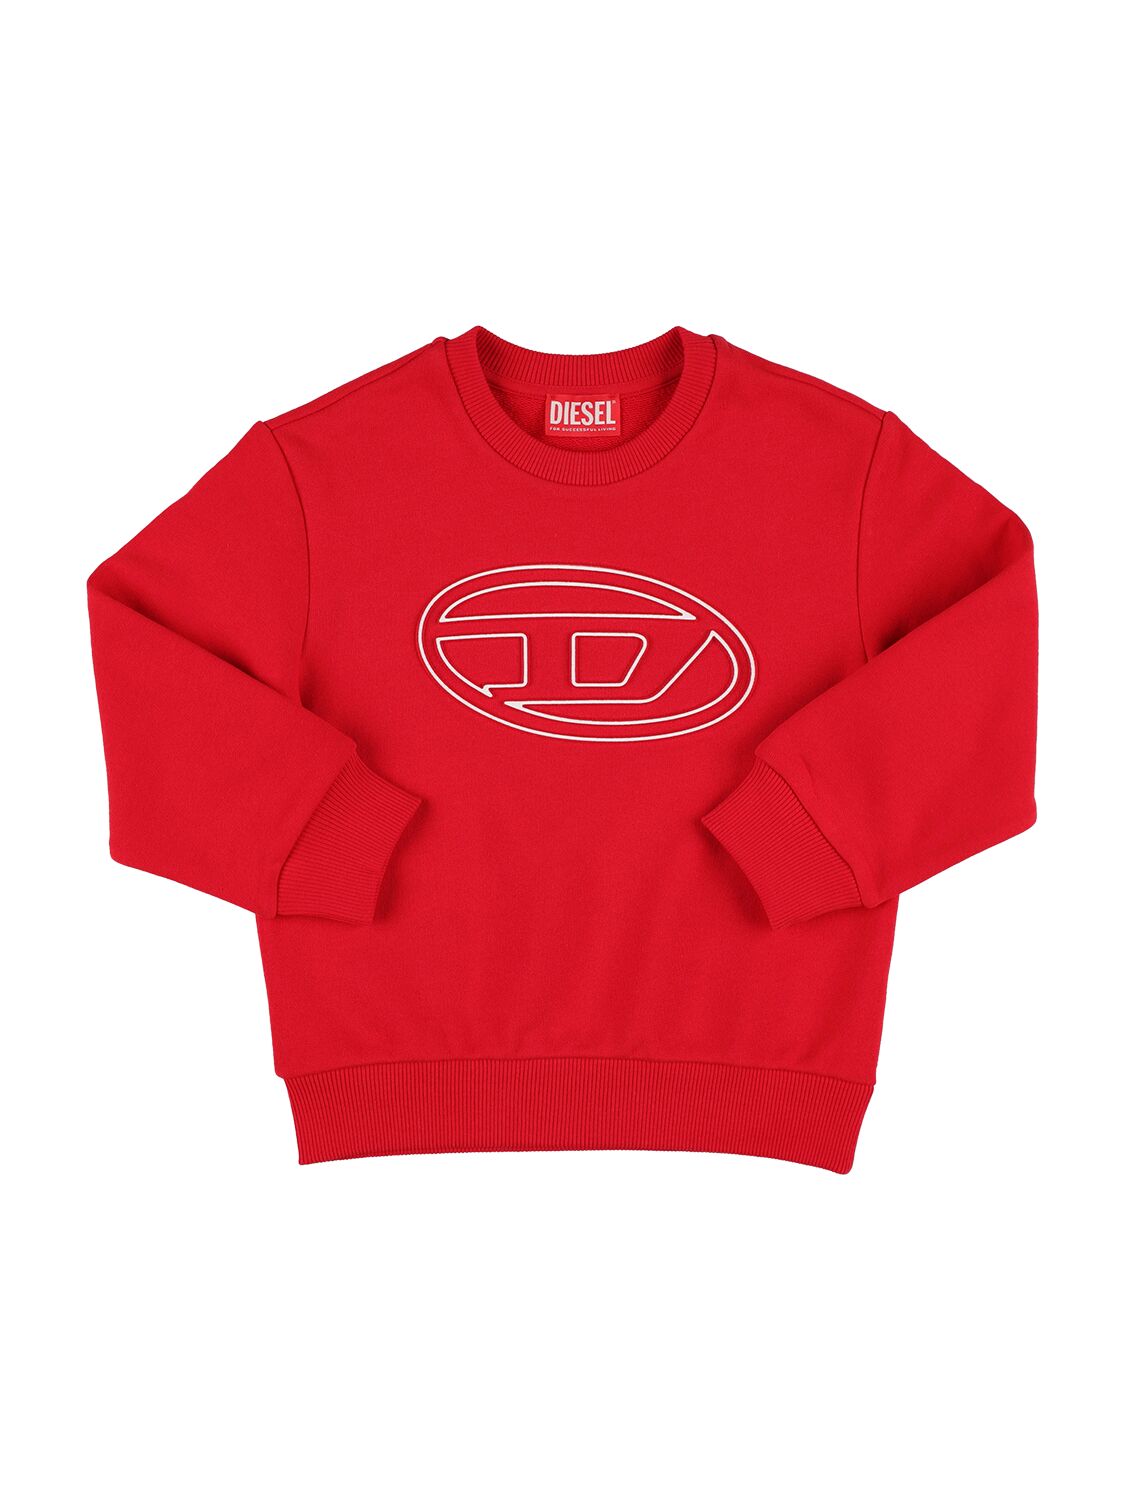 Diesel Kids' Cotton Logo Sweatshirt In Red